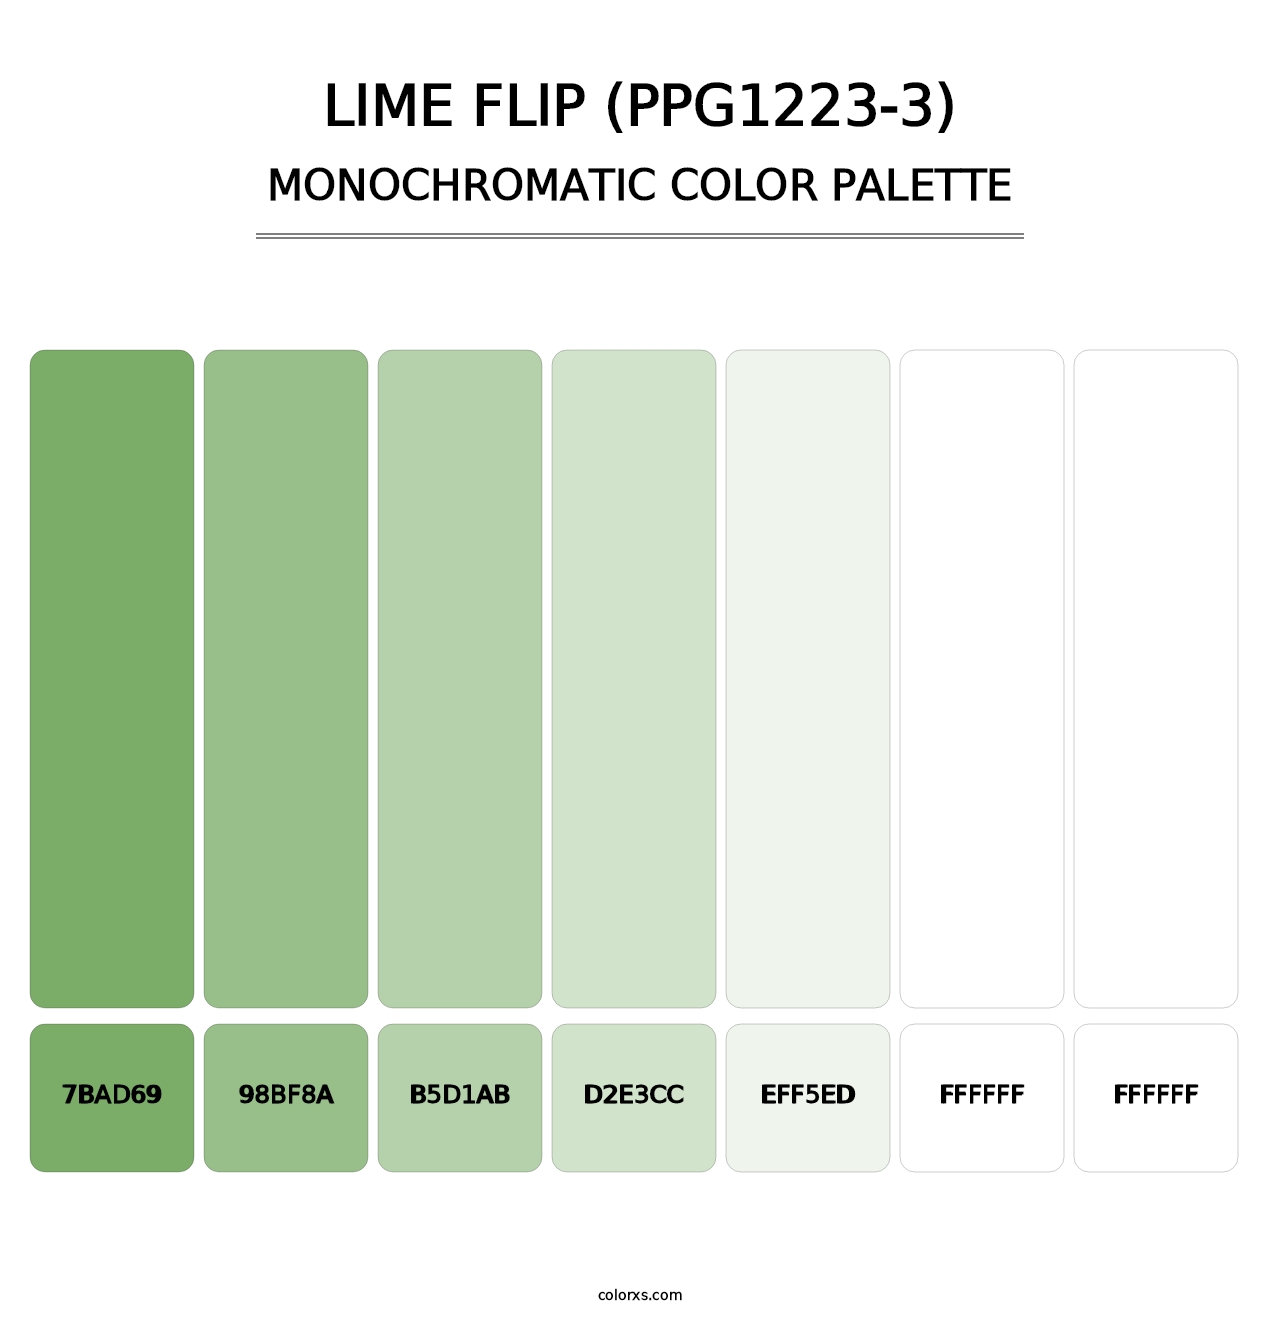 Lime Flip (PPG1223-3) - Monochromatic Color Palette